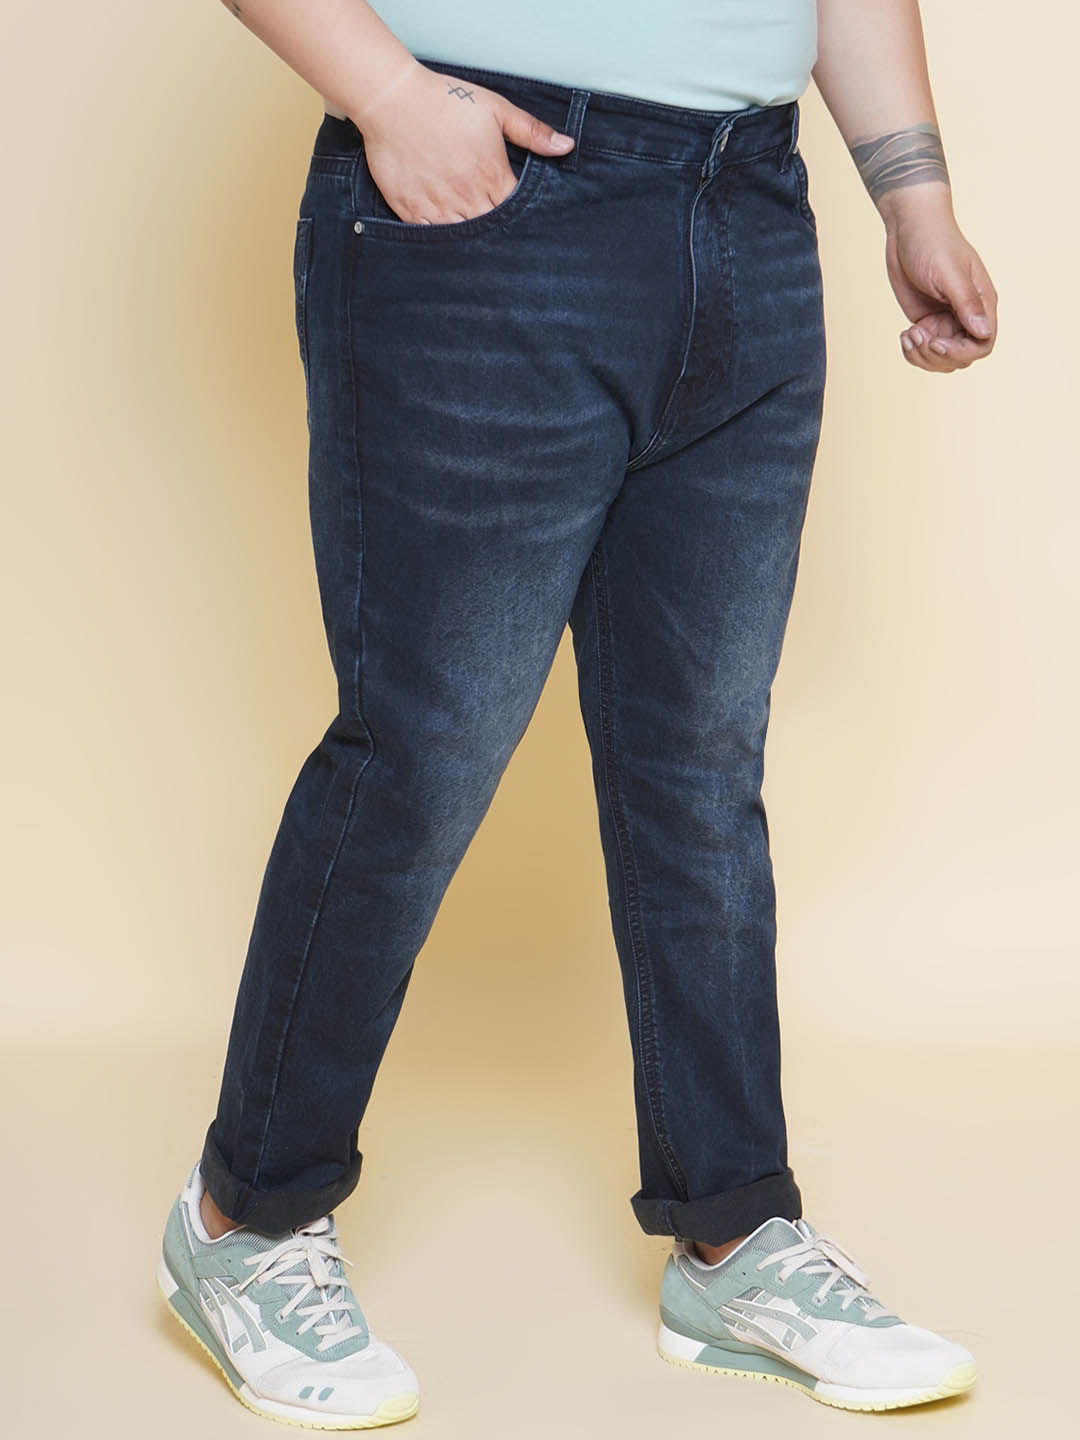 bottomwear/jeans/PJPJ6093/pjpj6093-3.jpg